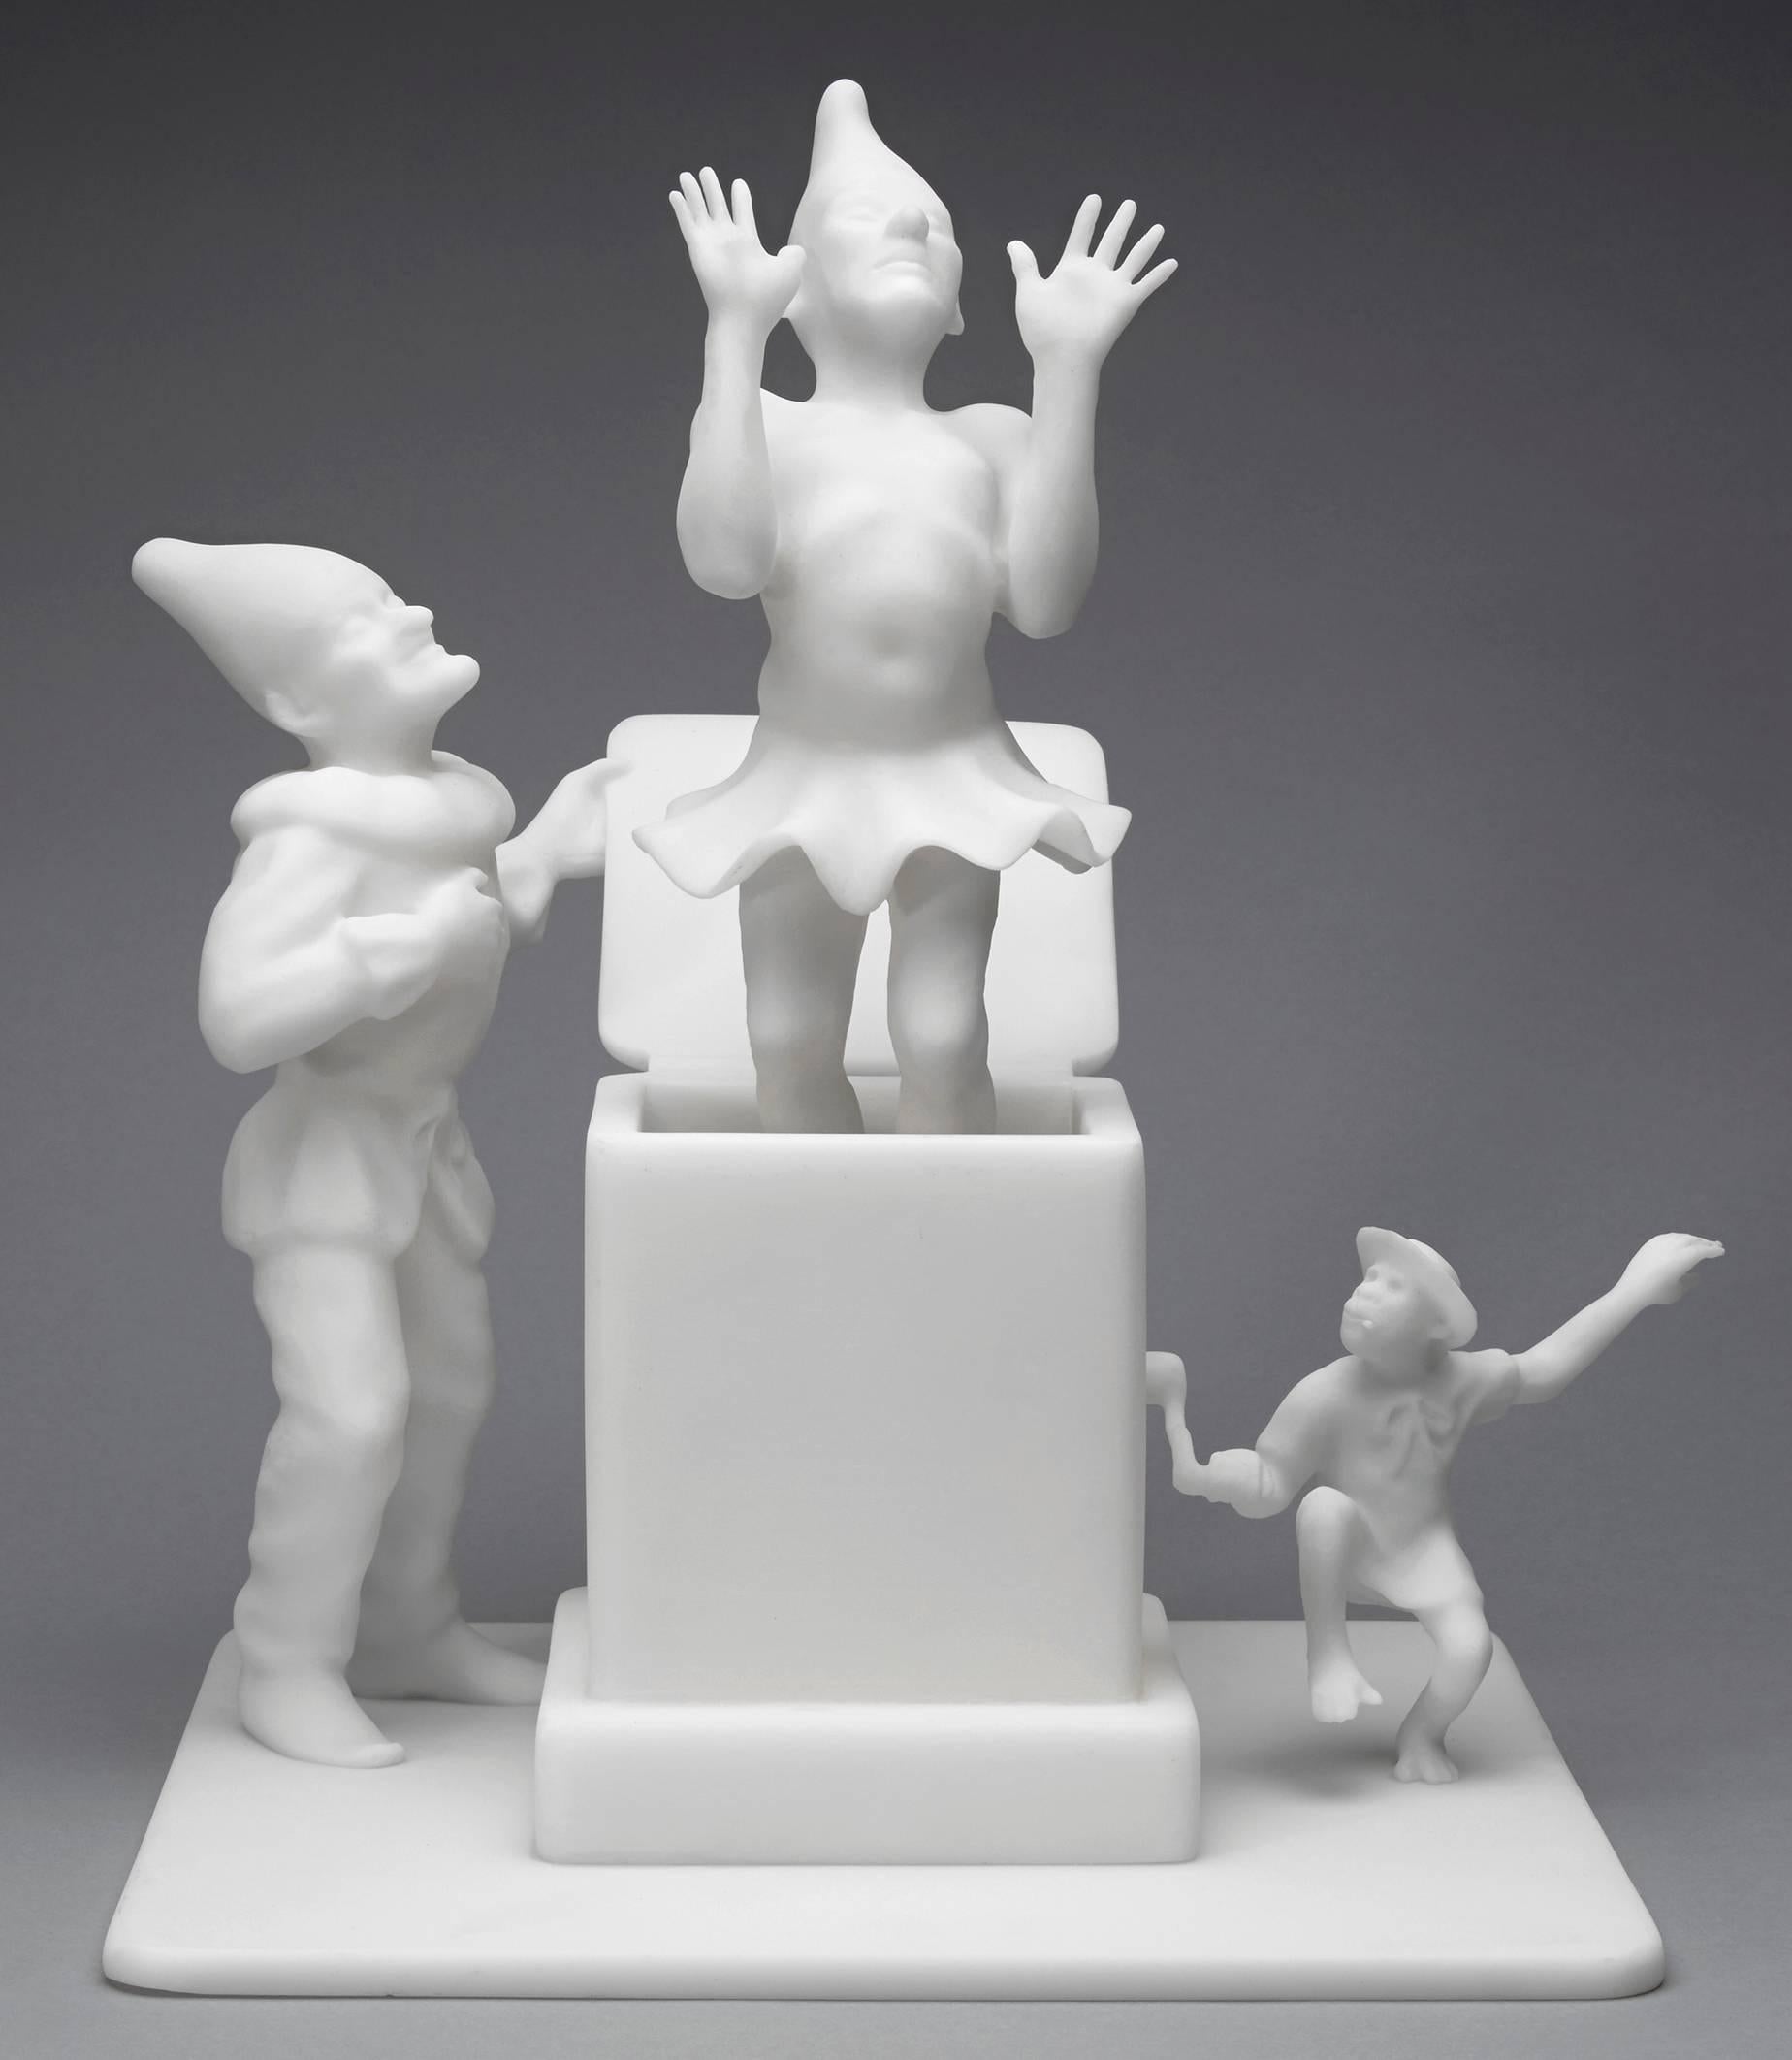 Robert Taplin Still-Life Sculpture - Punch Pops the Weasel